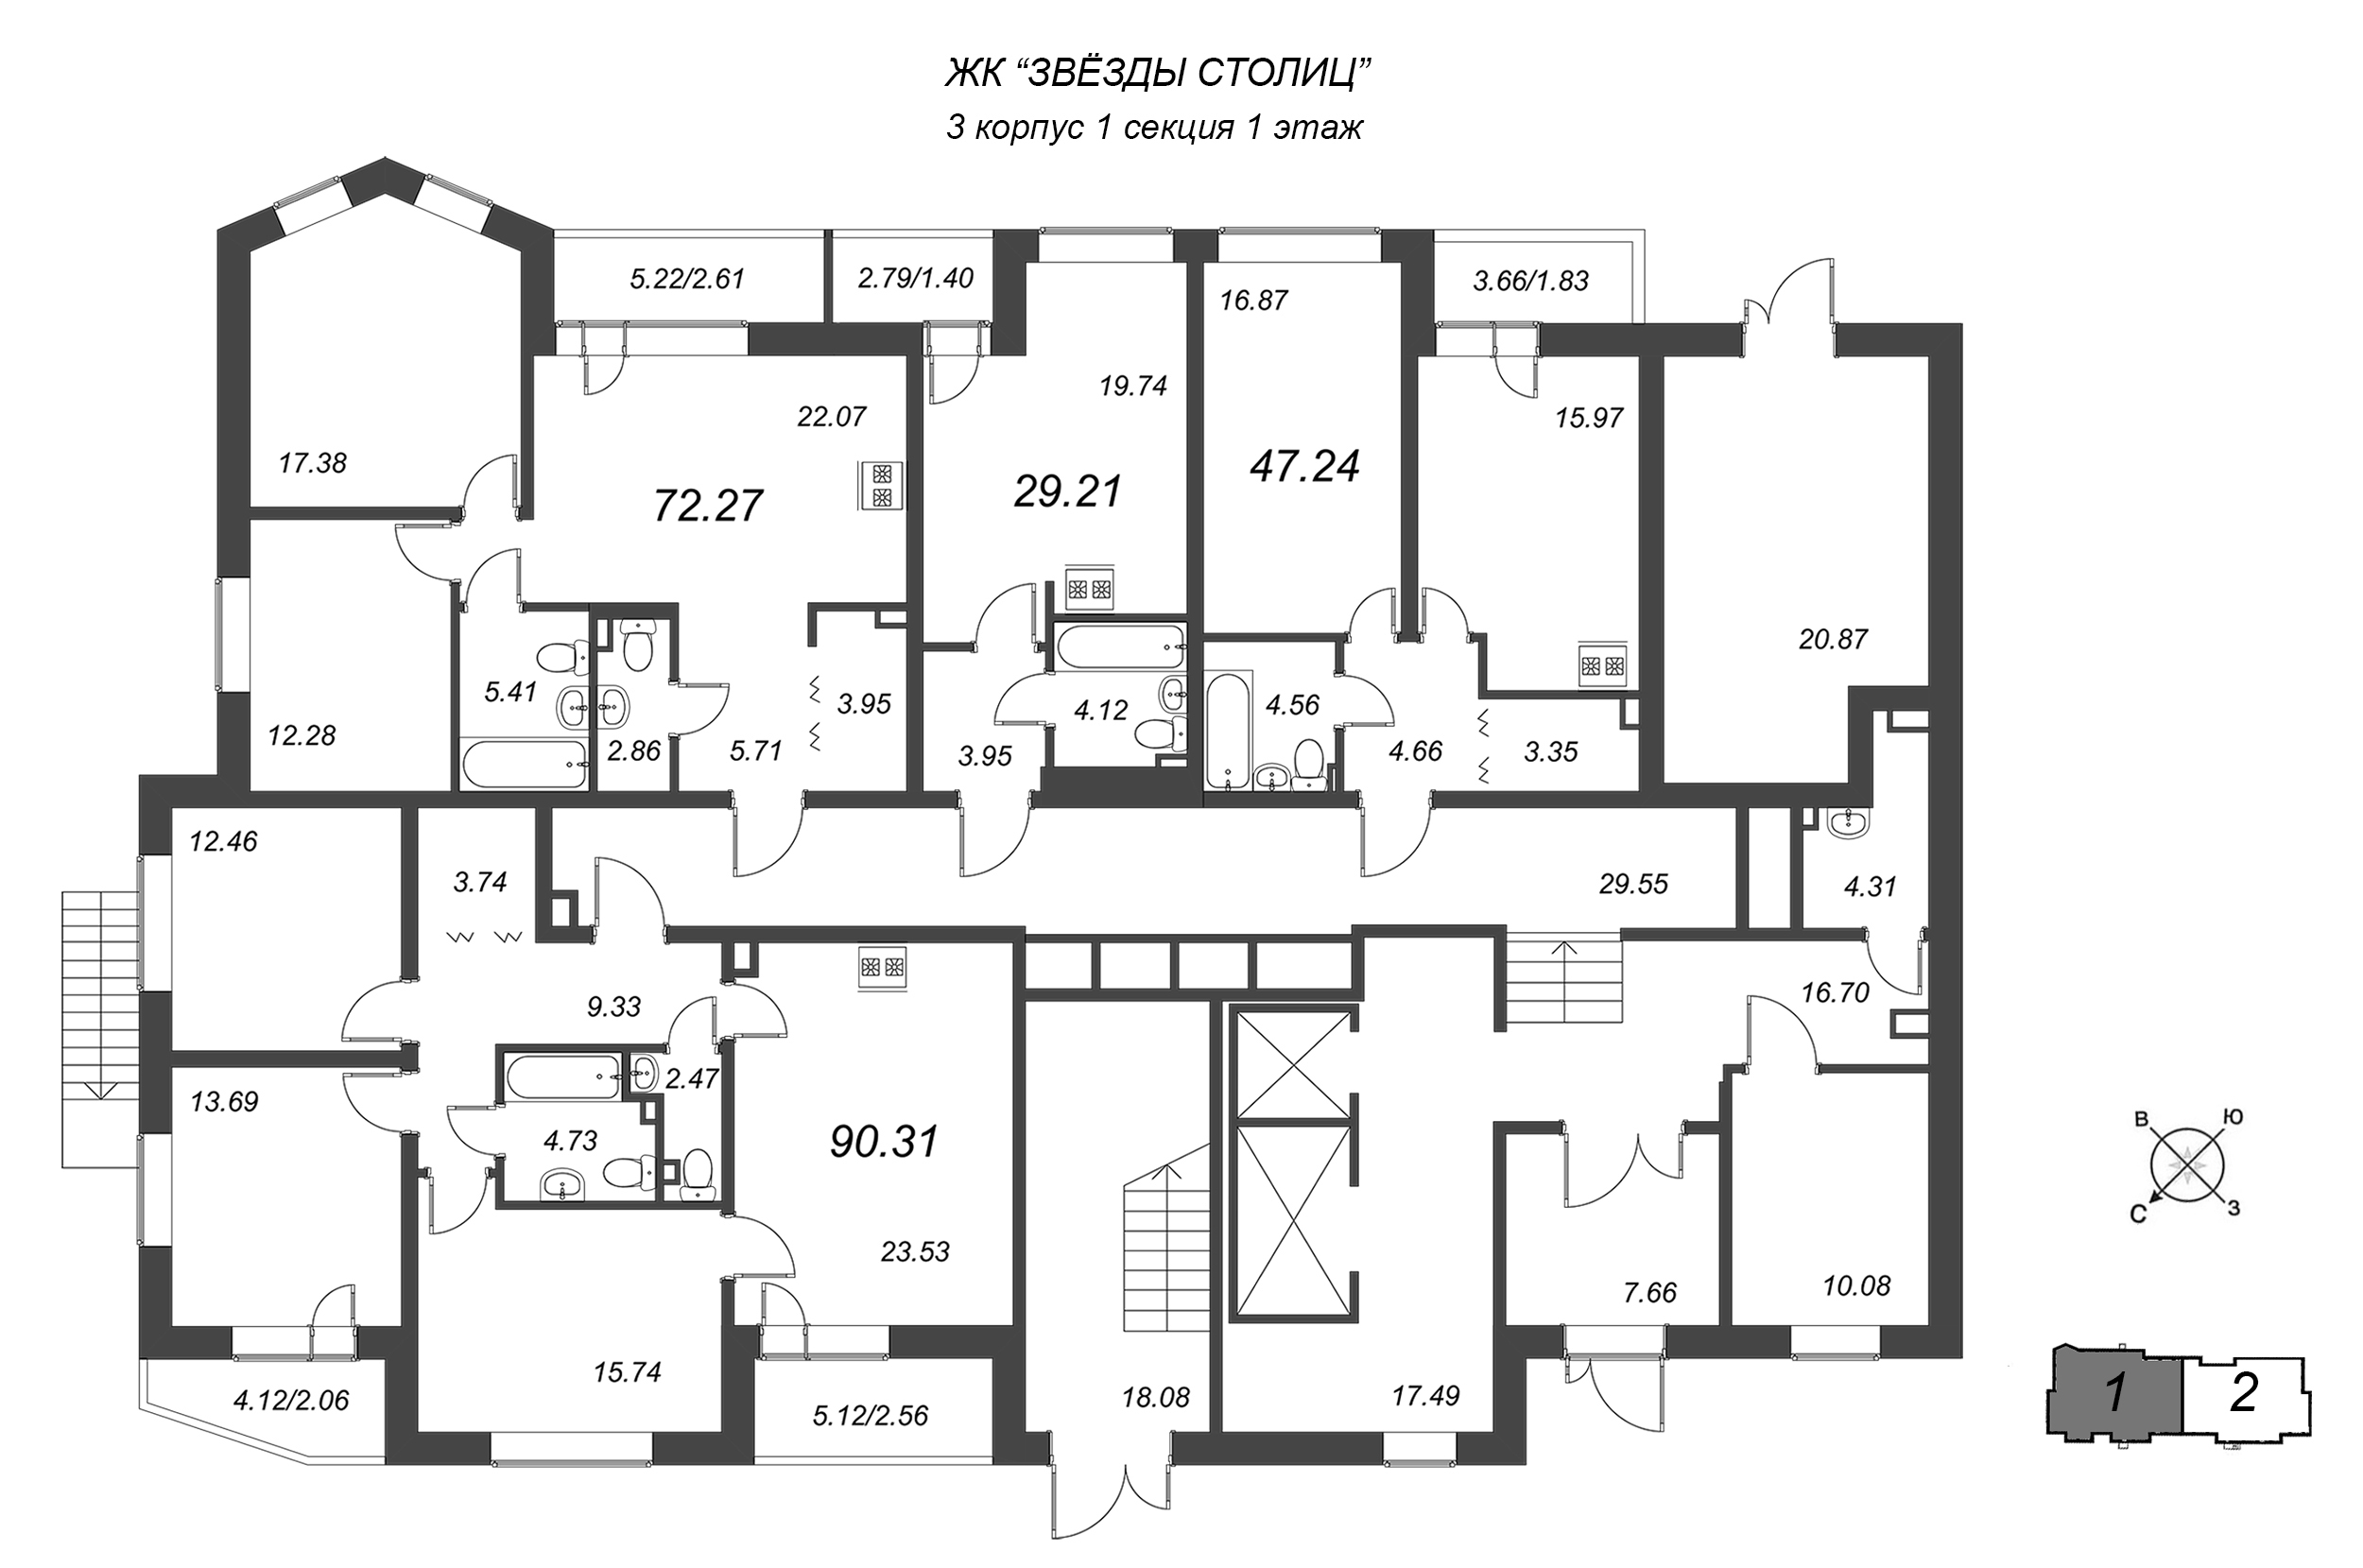 4-комнатная (Евро) квартира, 85.3 м² в ЖК "Звезды Столиц" - планировка этажа